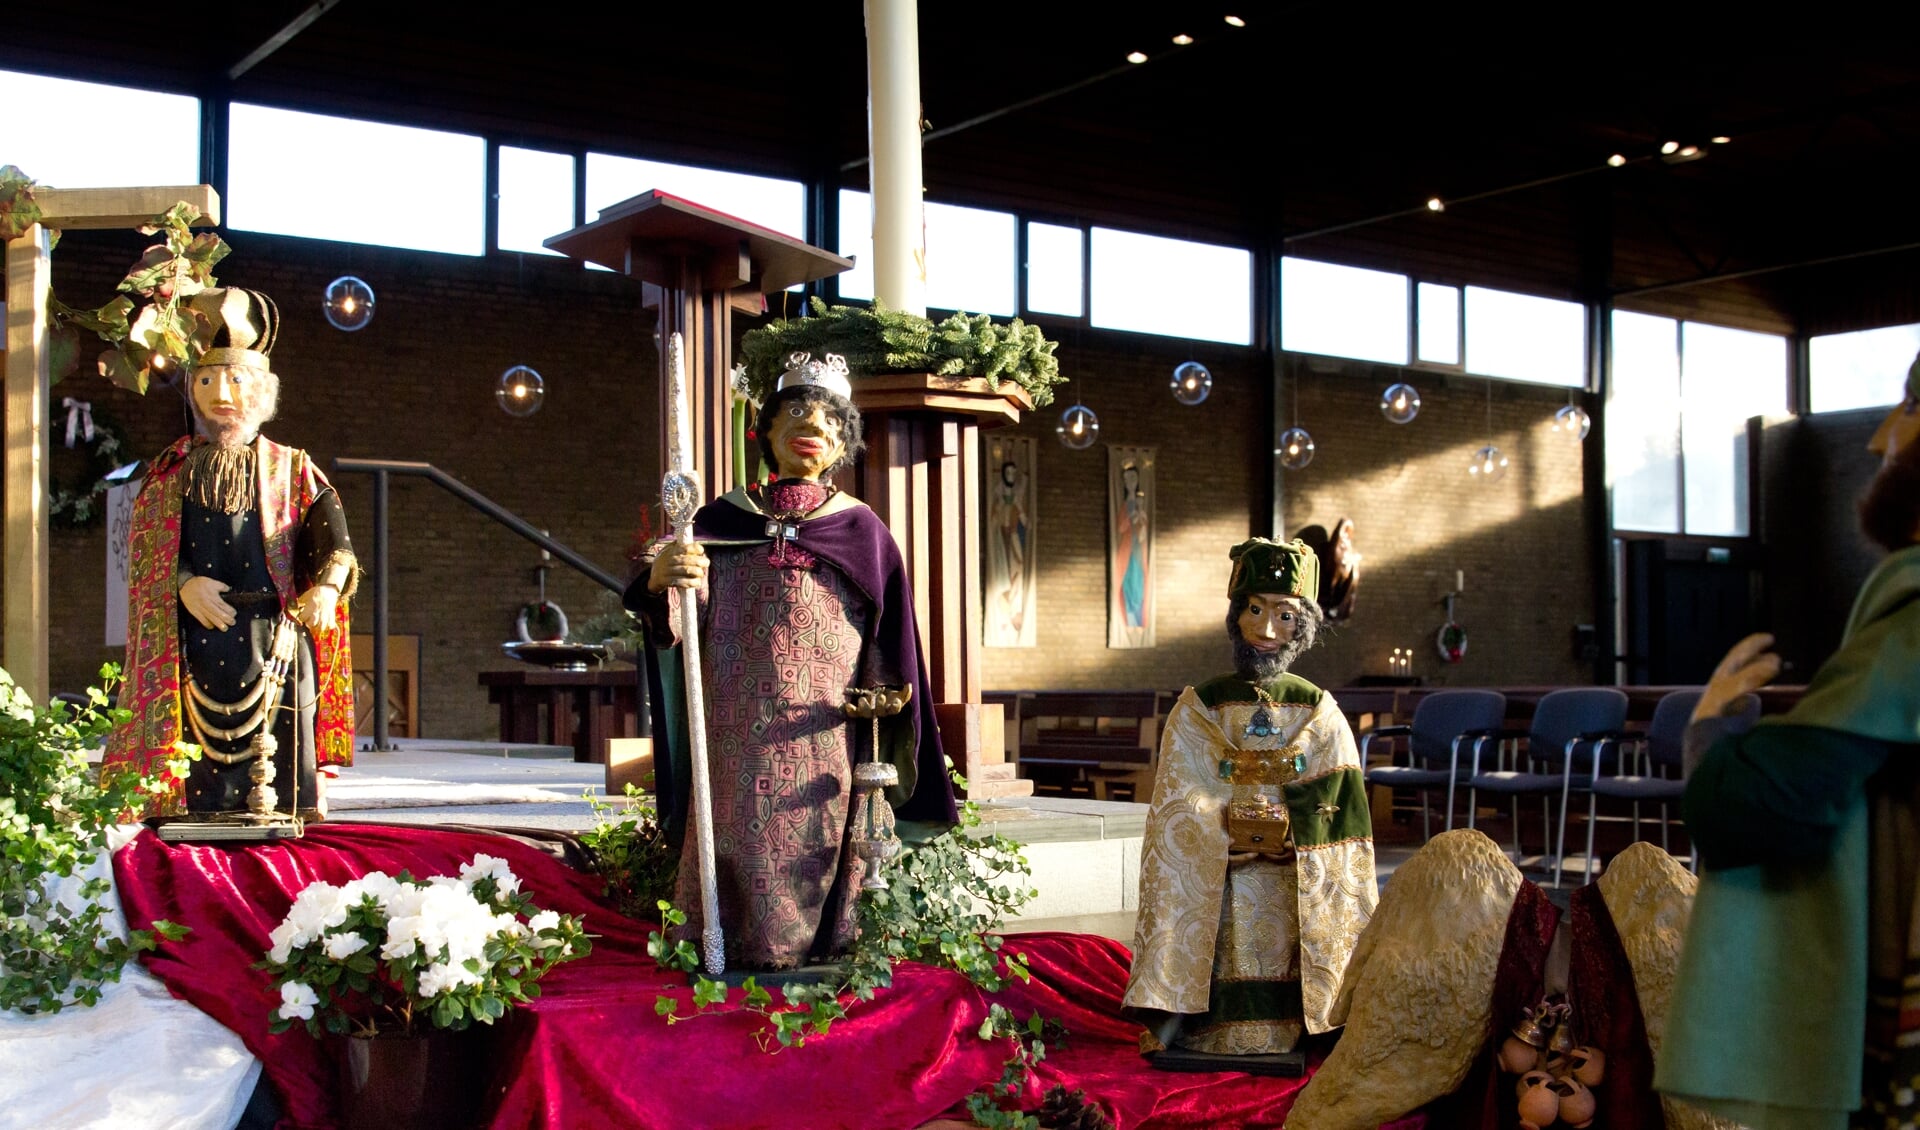 de Driekoningen in de Kerststal Nicolaaskerk, Odijk van kunstenares Thea Lammers